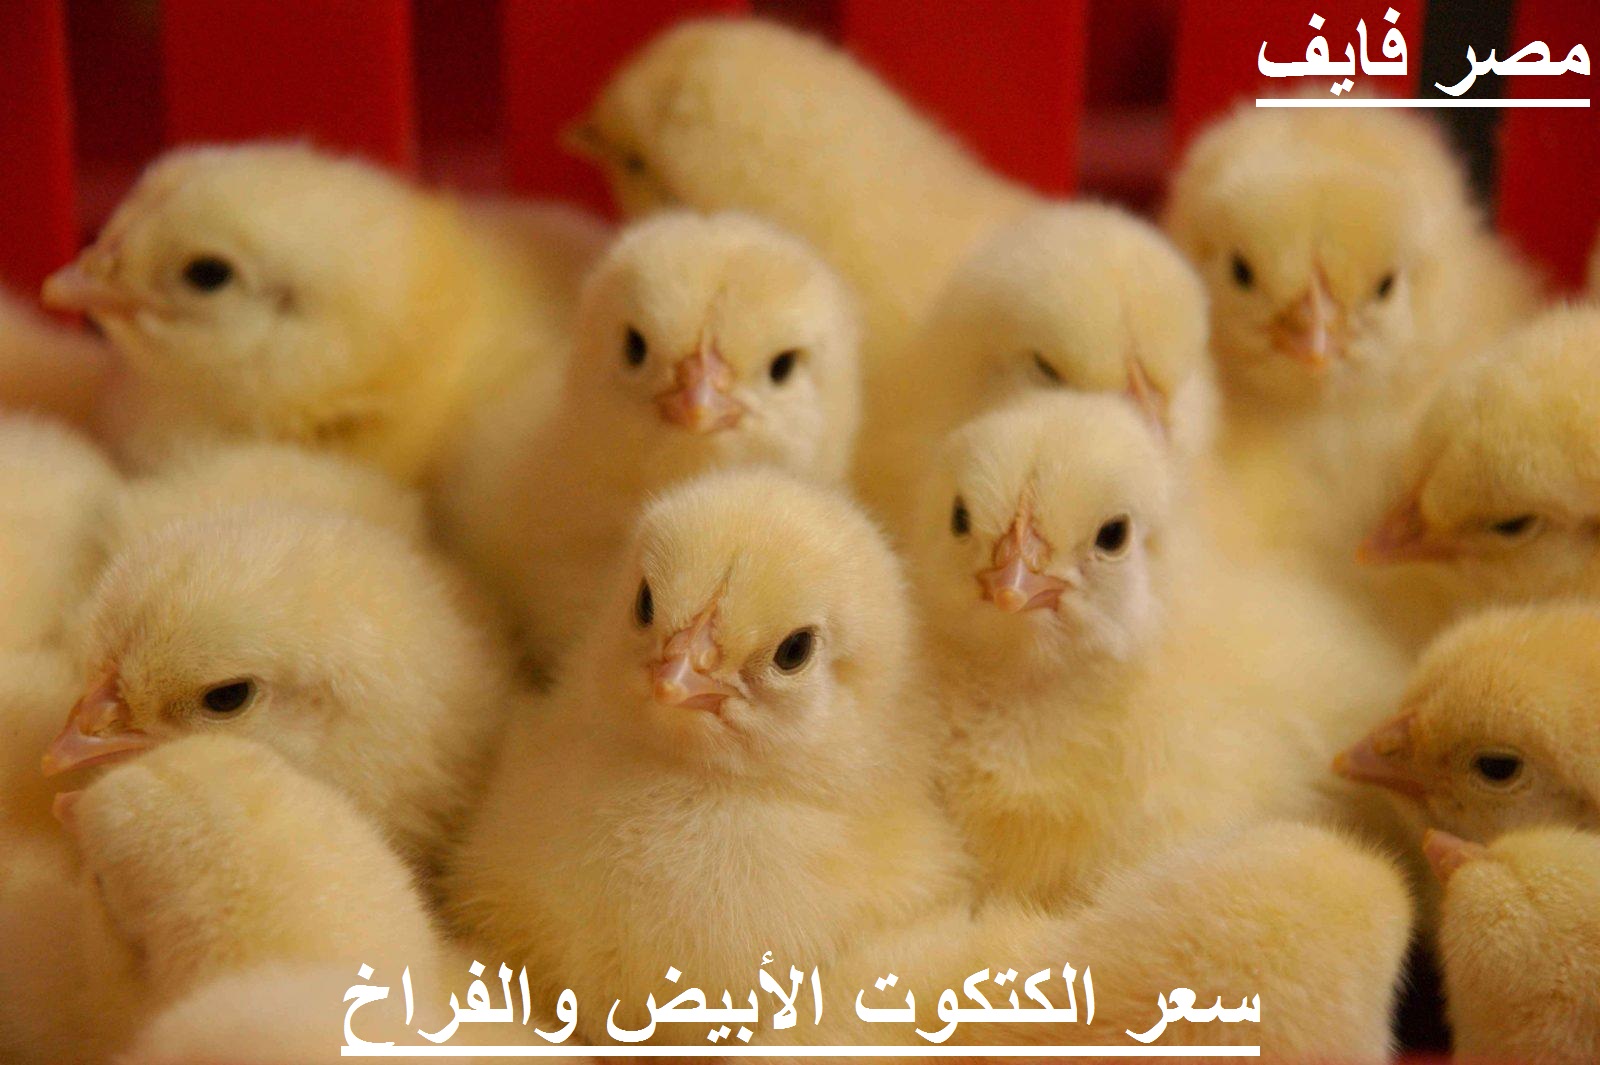 سعر الفراخ اليوم الإثنين 2 أغسطس في بورصة الدواجن وسعر الكتكوت الأبيض والبيض 2